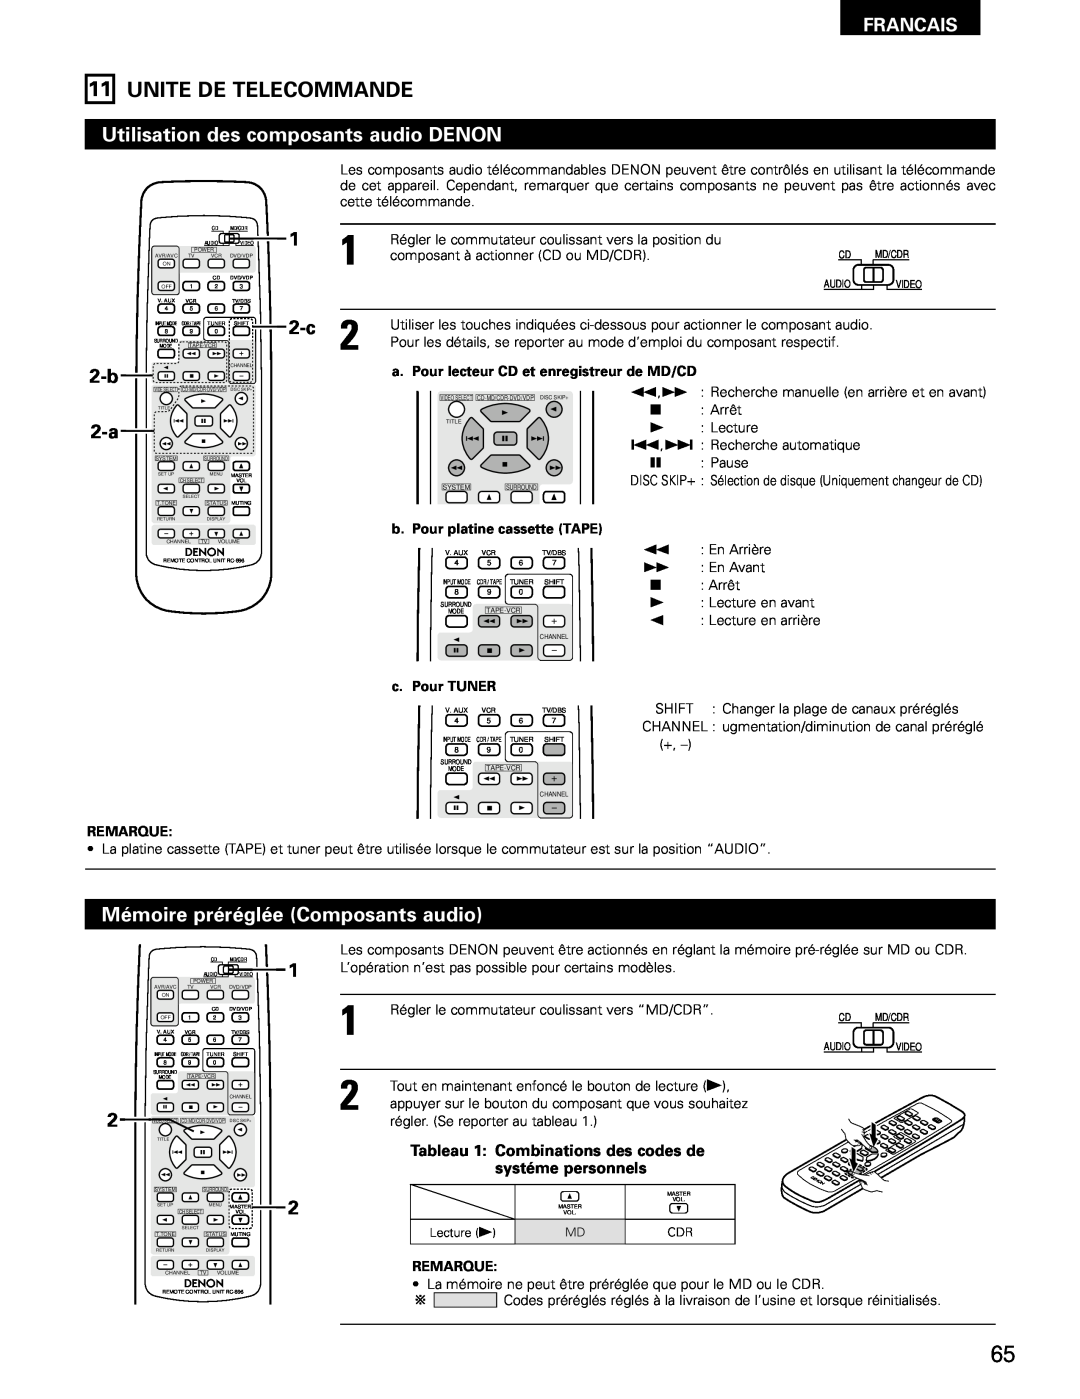 Denon AVR-682, AVR-1602 manual Unite De Telecommande, Francais, b. Pour platine cassette TAPE, c. Pour TUNER, Remarque 